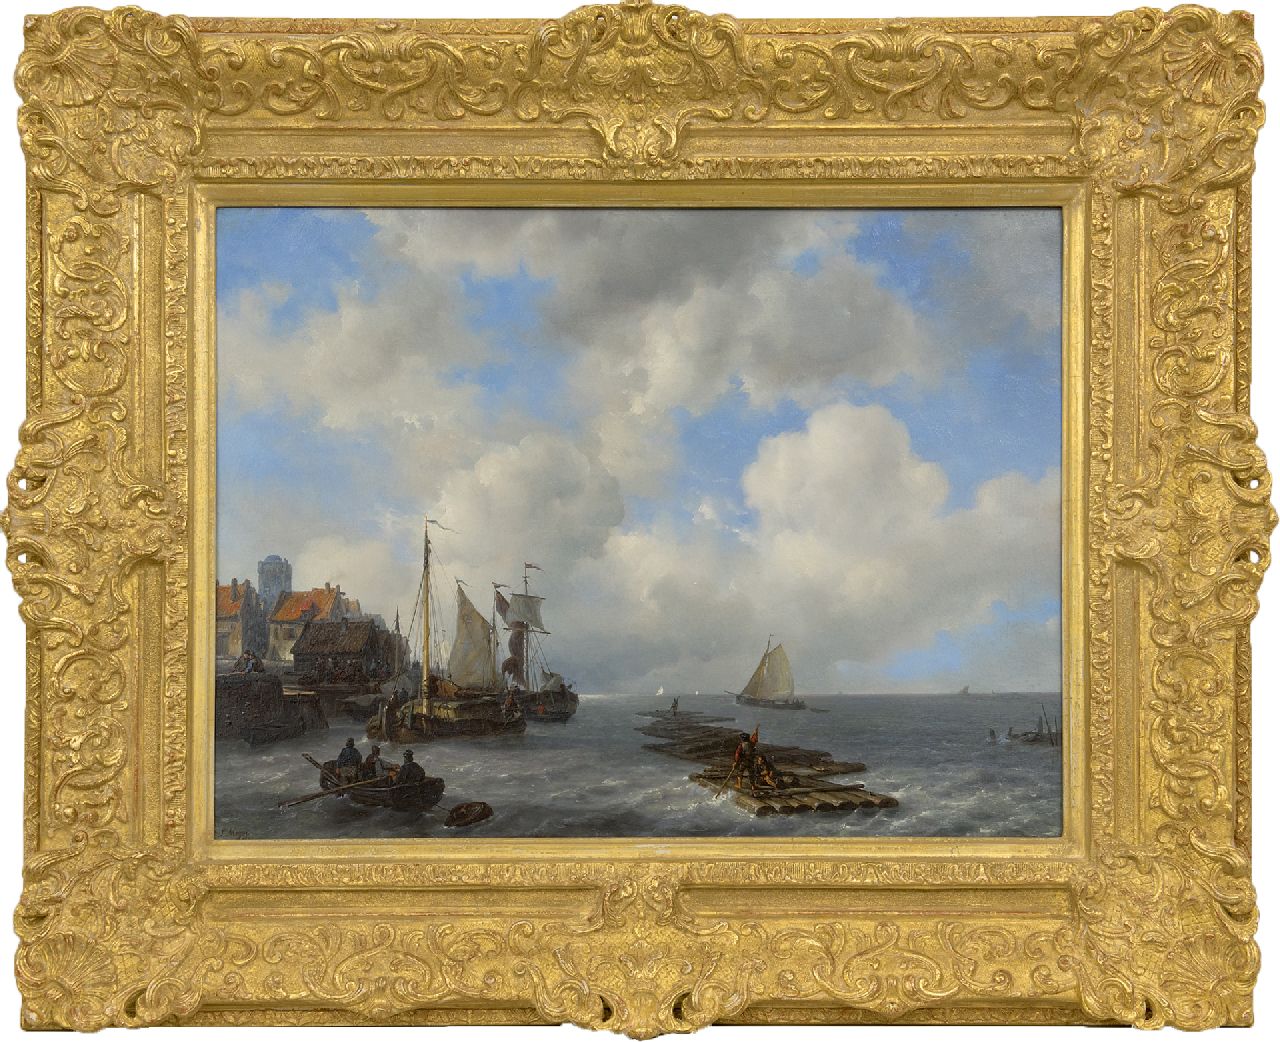 Meijer J.H.L.  | Johan Hendrik 'Louis' Meijer | Schilderijen te koop aangeboden | Bedrijvigheid van houttransporten aan een zeekade, olieverf op paneel 46,8 x 61,8 cm, gesigneerd linksonder en gedateerd 1841